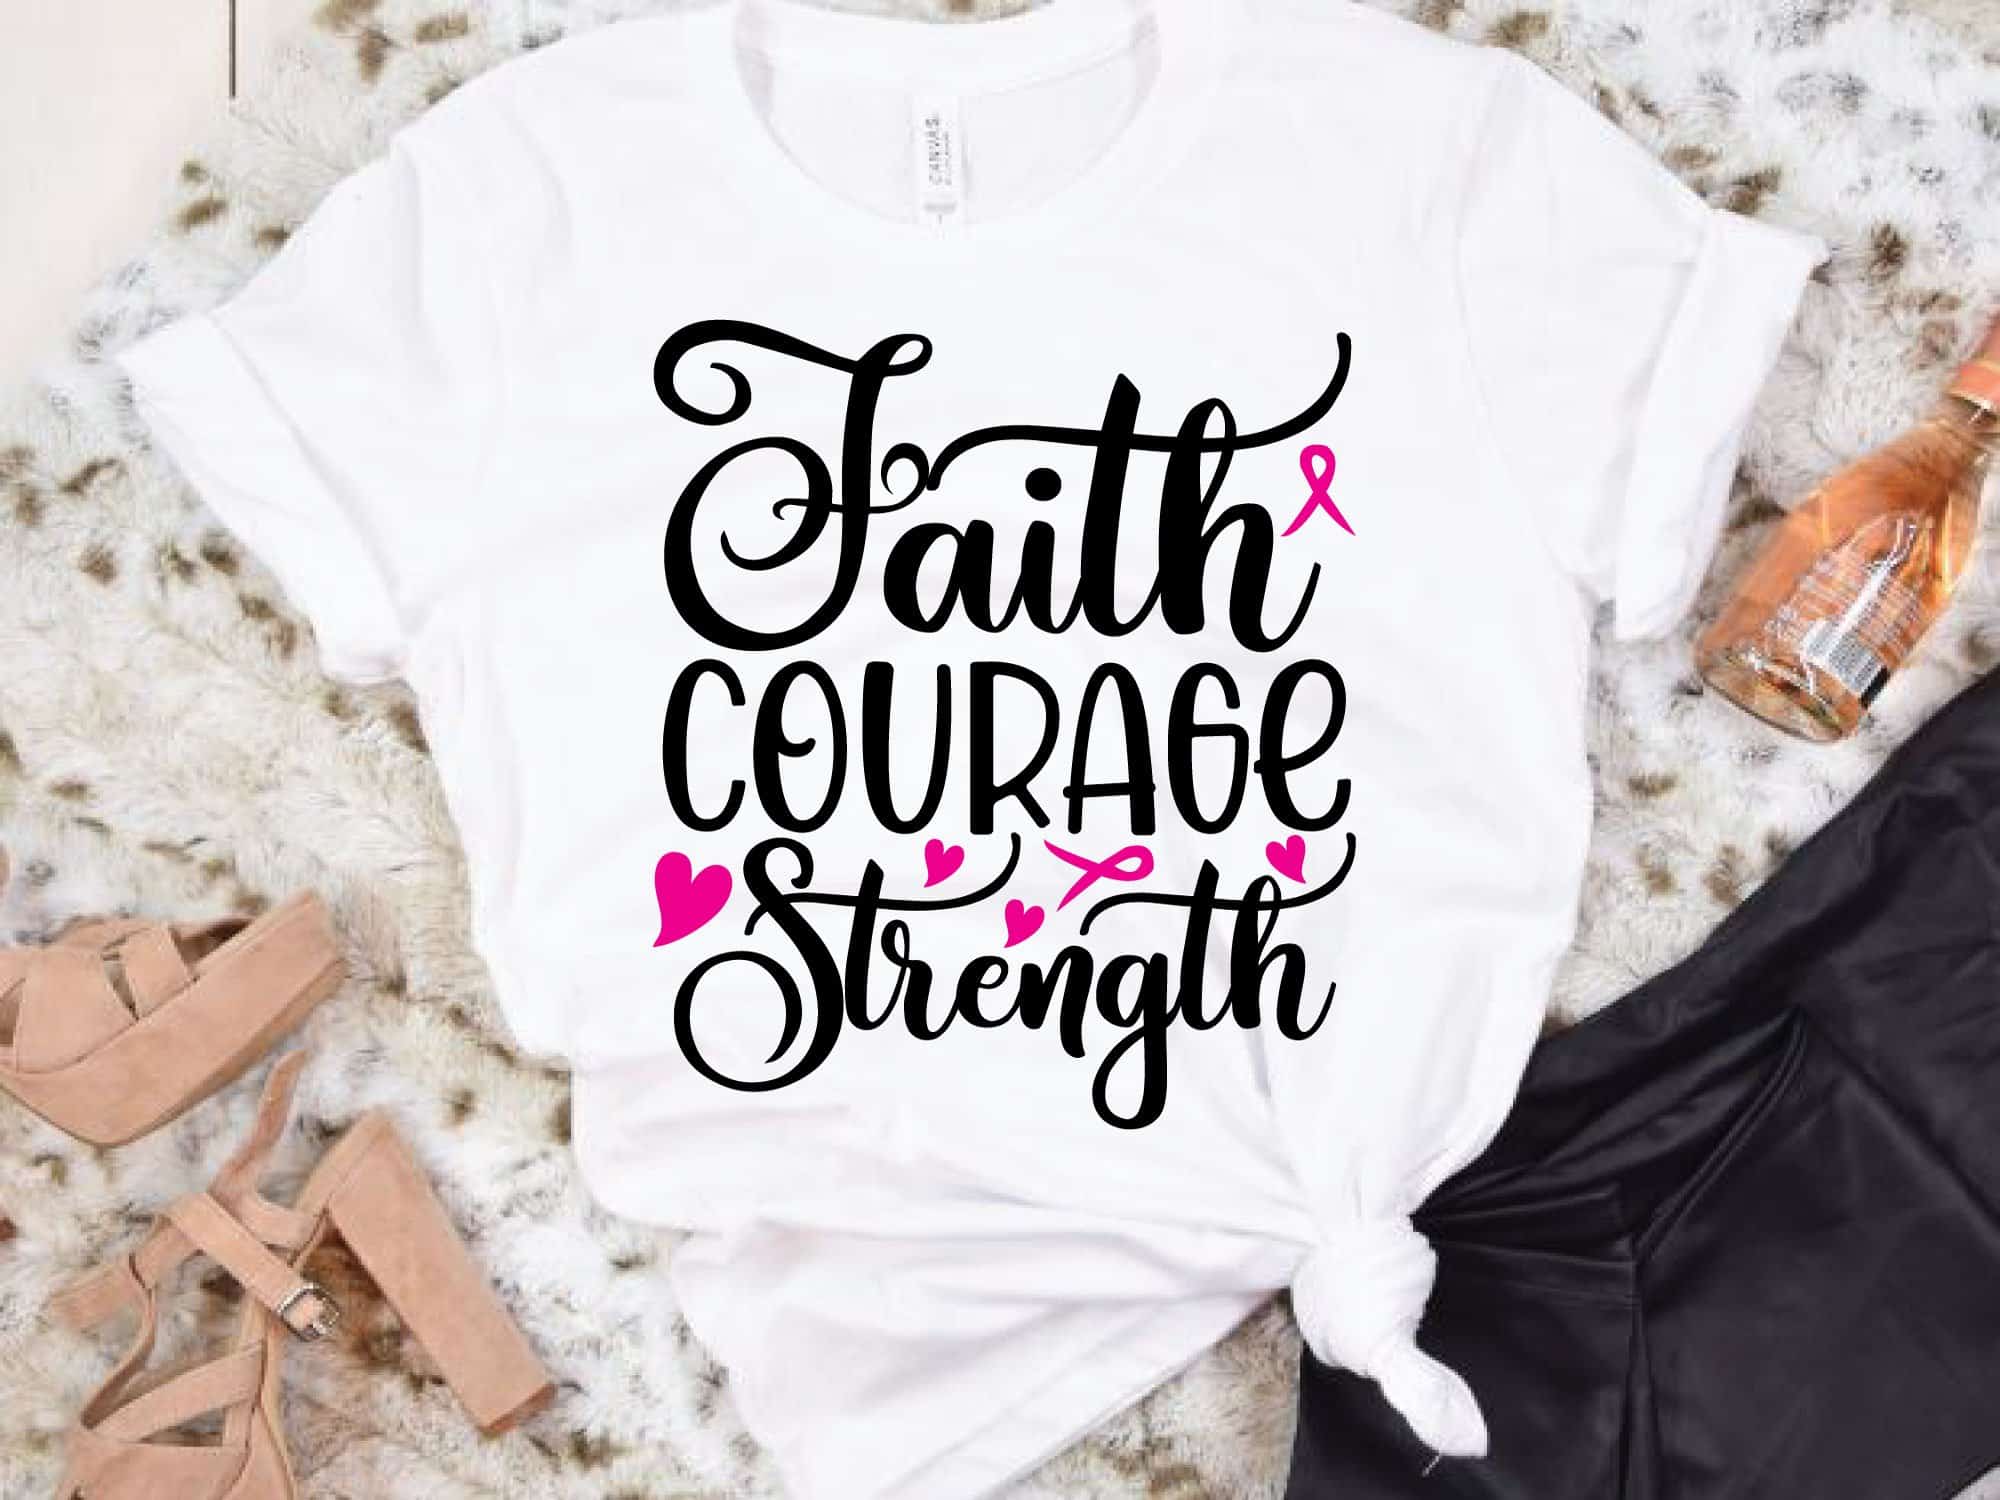 Breast Cancer Awareness SVG T-shirt Design Bundle - MasterBundles